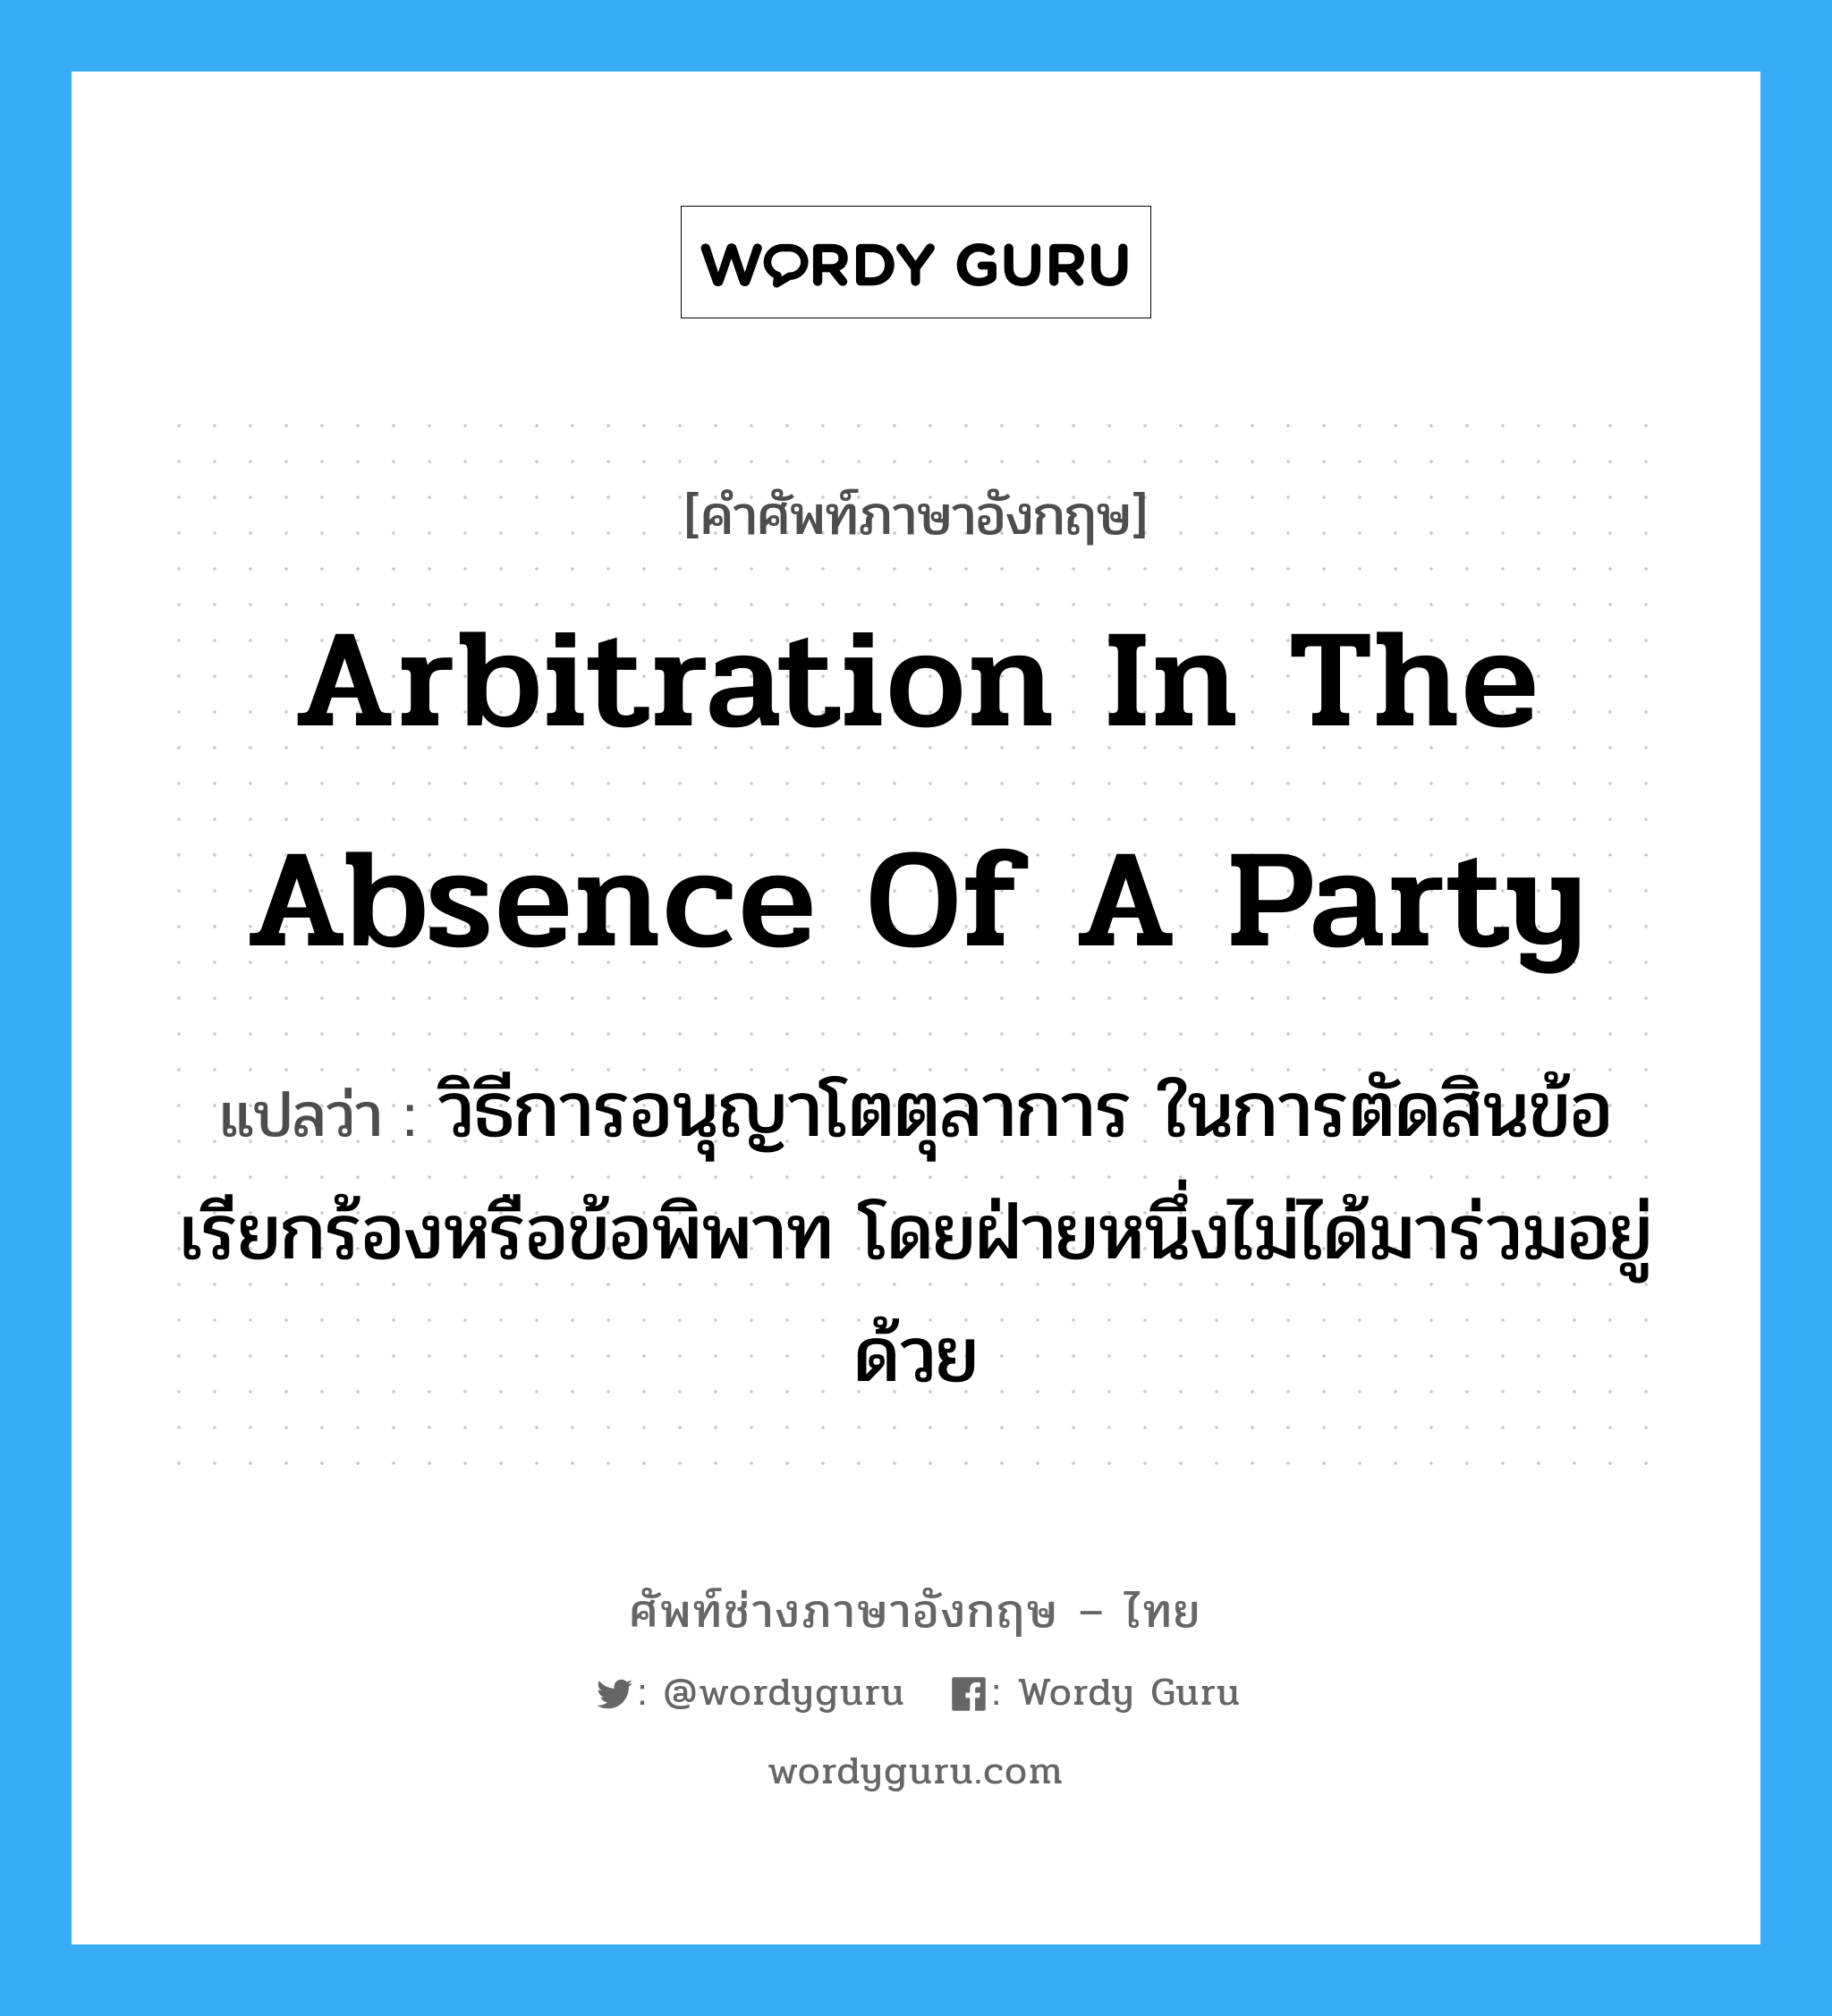 Arbitration in the Absence of a Party แปลว่า?, คำศัพท์ช่างภาษาอังกฤษ - ไทย Arbitration in the Absence of a Party คำศัพท์ภาษาอังกฤษ Arbitration in the Absence of a Party แปลว่า วิธีการอนุญาโตตุลาการ ในการตัดสินข้อเรียกร้องหรือข้อพิพาท โดยฝ่ายหนึ่งไม่ได้มาร่วมอยู่ด้วย